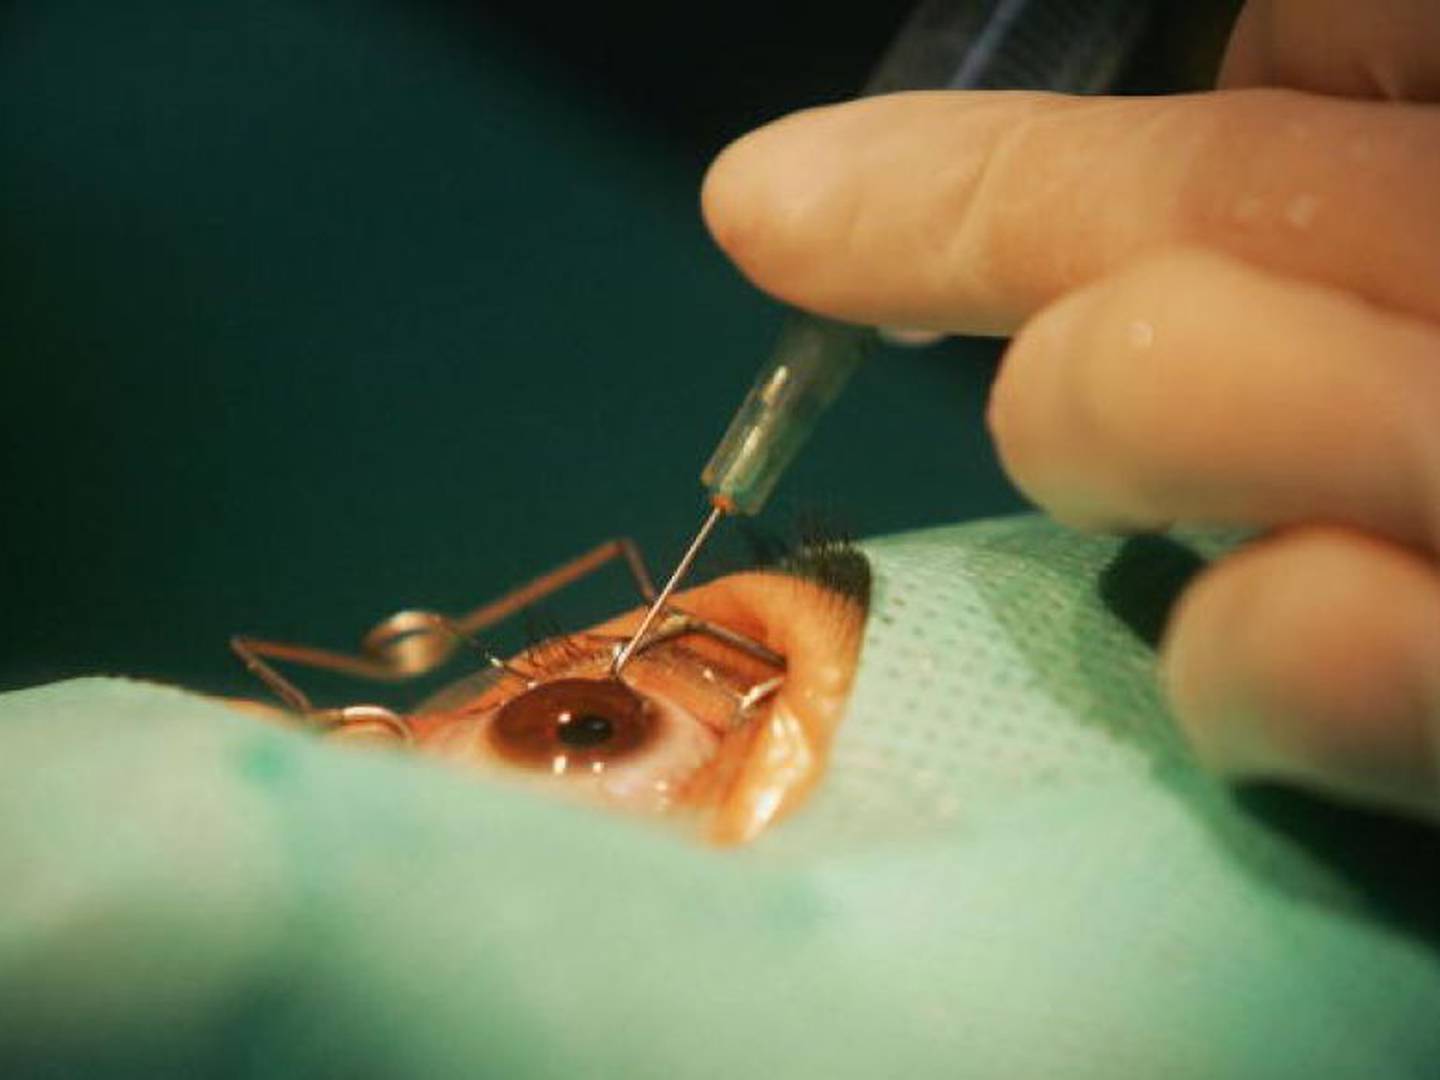 Así se extraen 23 lentes de contacto del ojo de una paciente